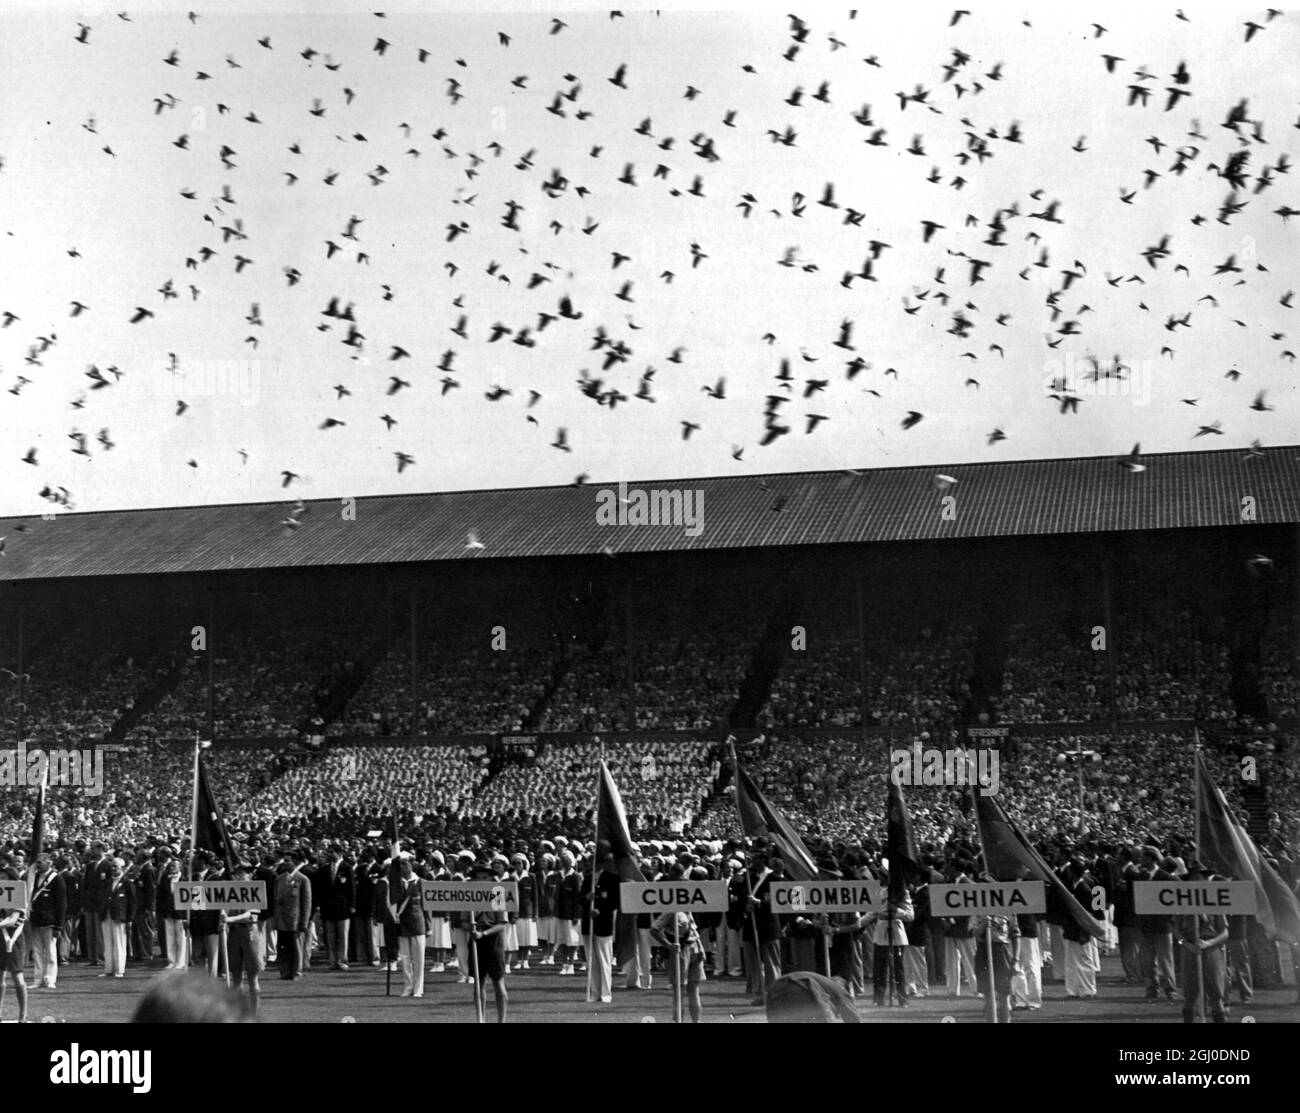 Olympische Spiele 1948 London, England einer der schönsten und beeindruckendsten Momente bei der Eröffnungsfeier in Wembley. Die Athleten stehen starr da Tausende von Tauben freigesetzt werden, um die Eröffnung der Spiele zu signalisieren. Juli 1948. Stockfoto